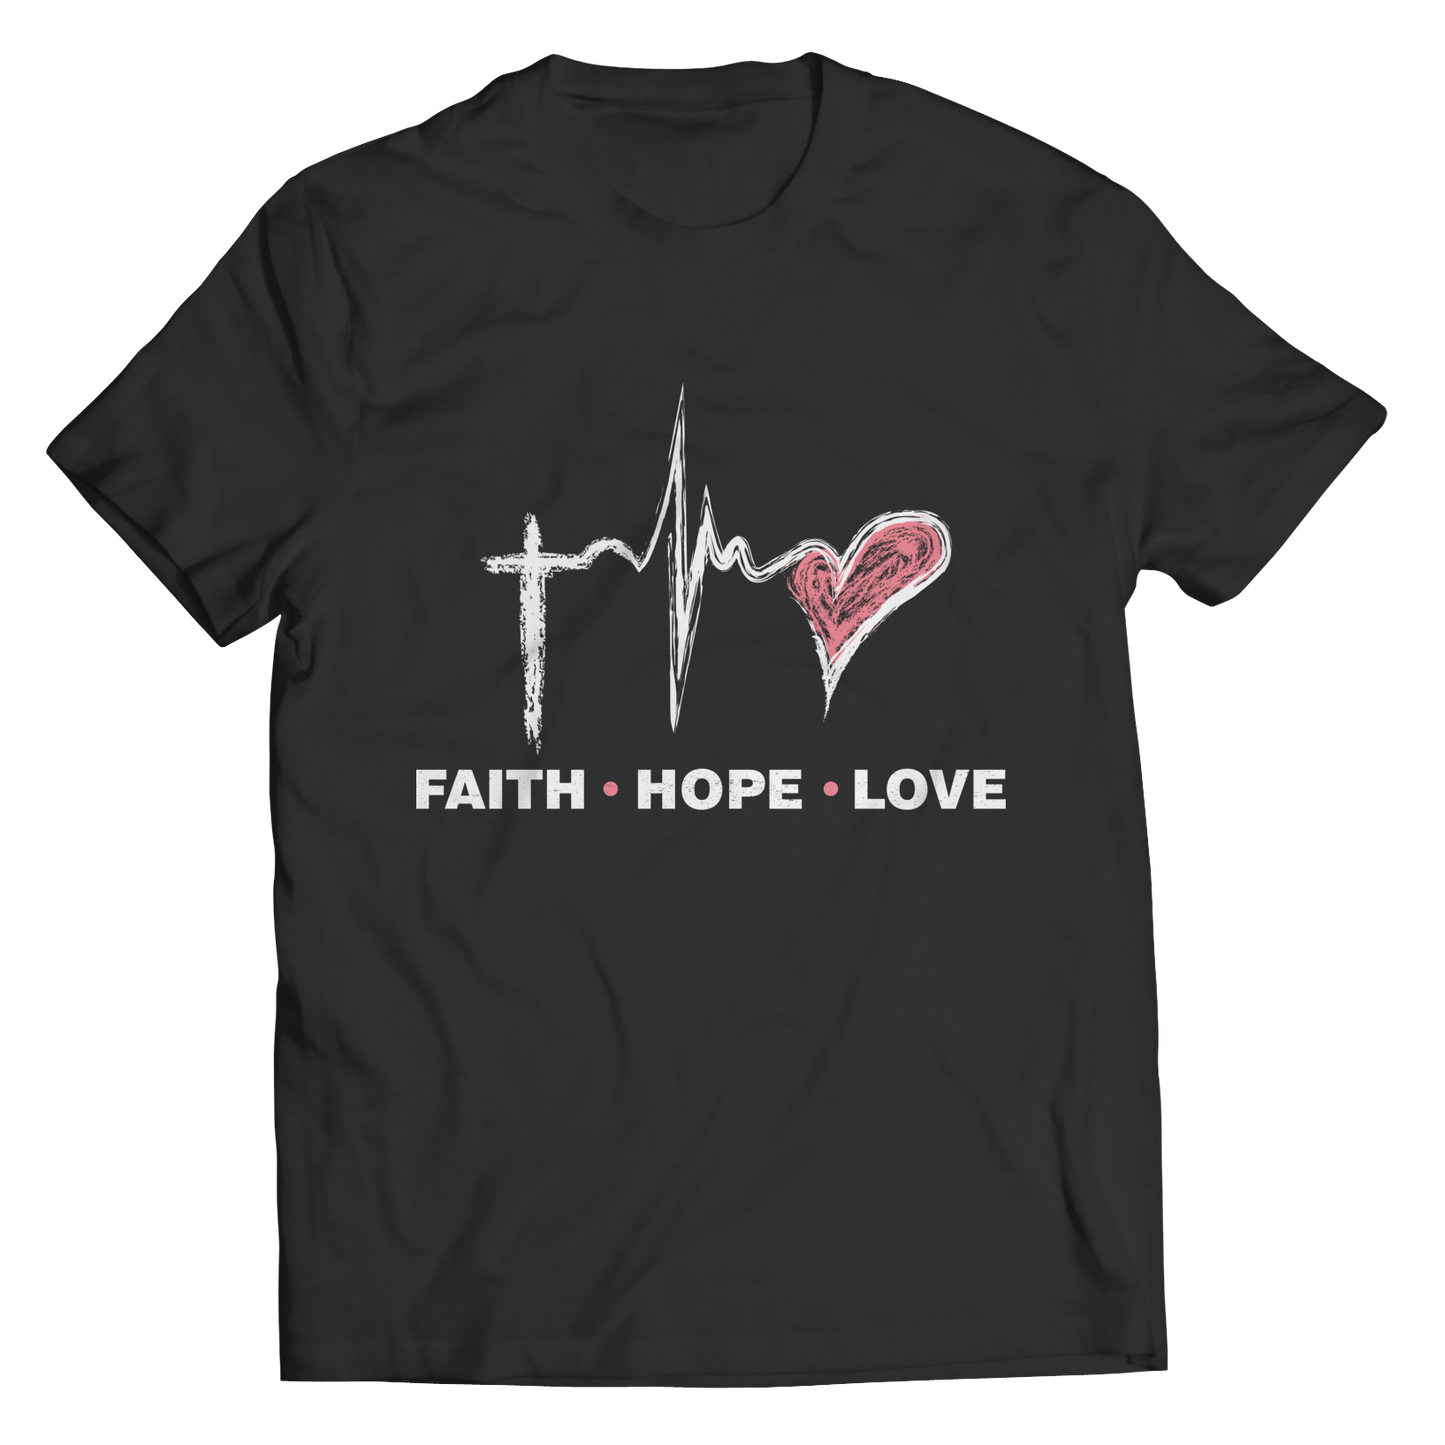 Unisex Shirt - Faith Hope Love T-Shirt